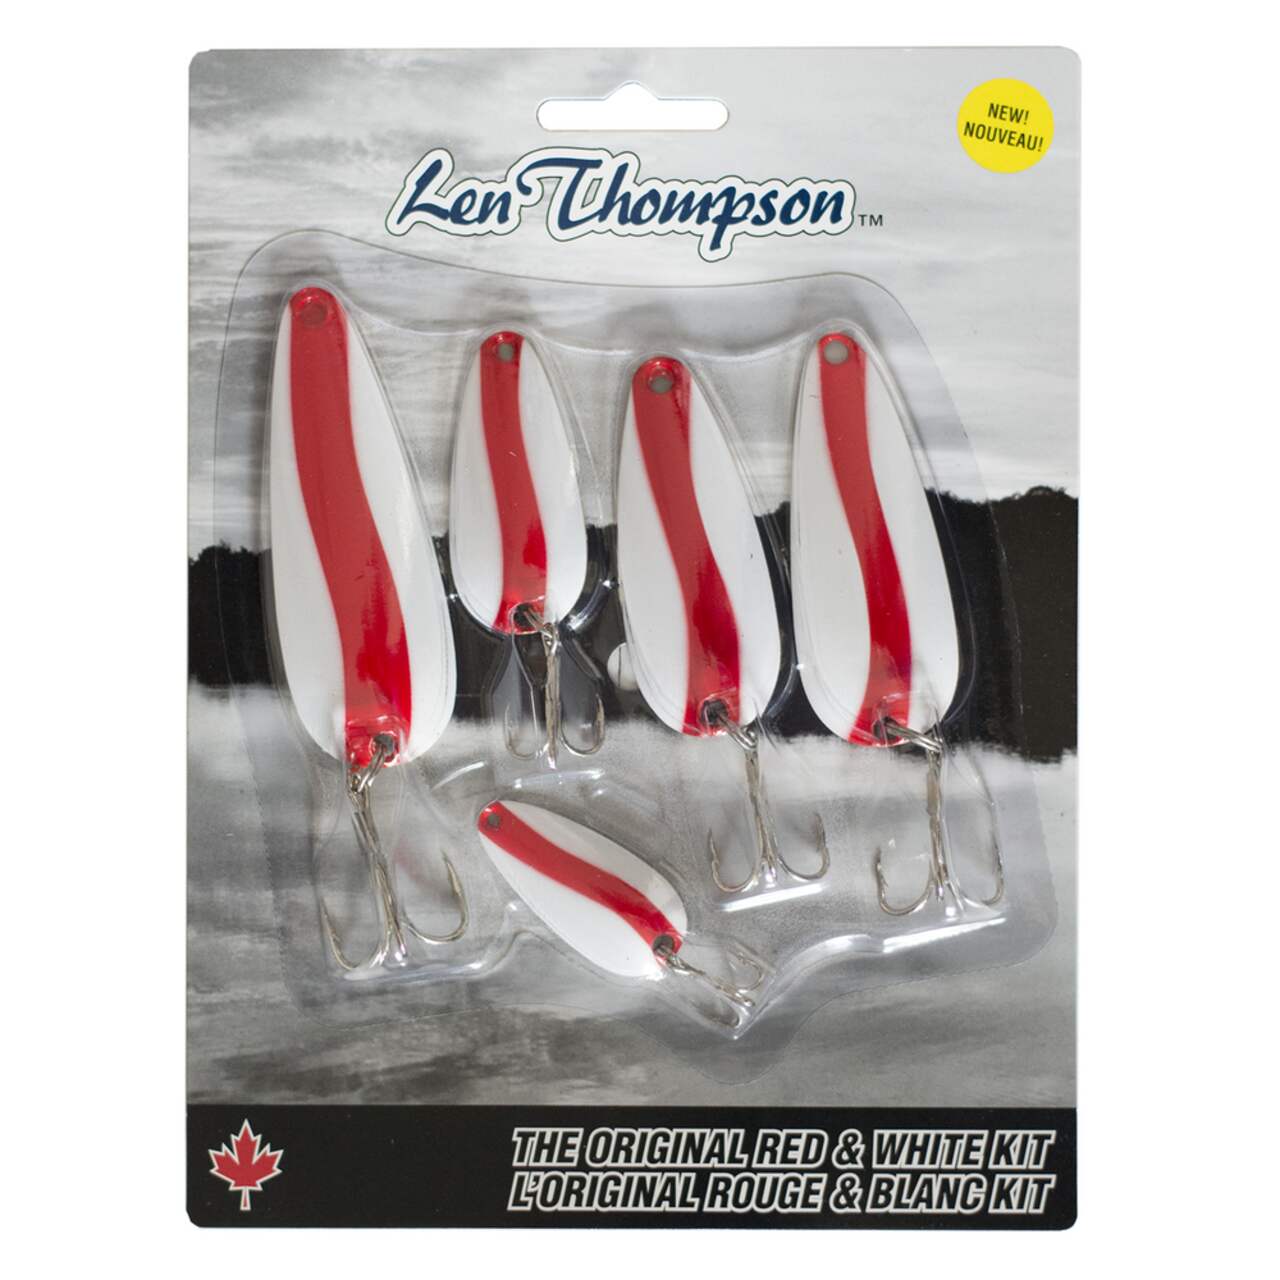 Len Thompson Classic Series Spoon Lure Kit, Red/White, 5-pk